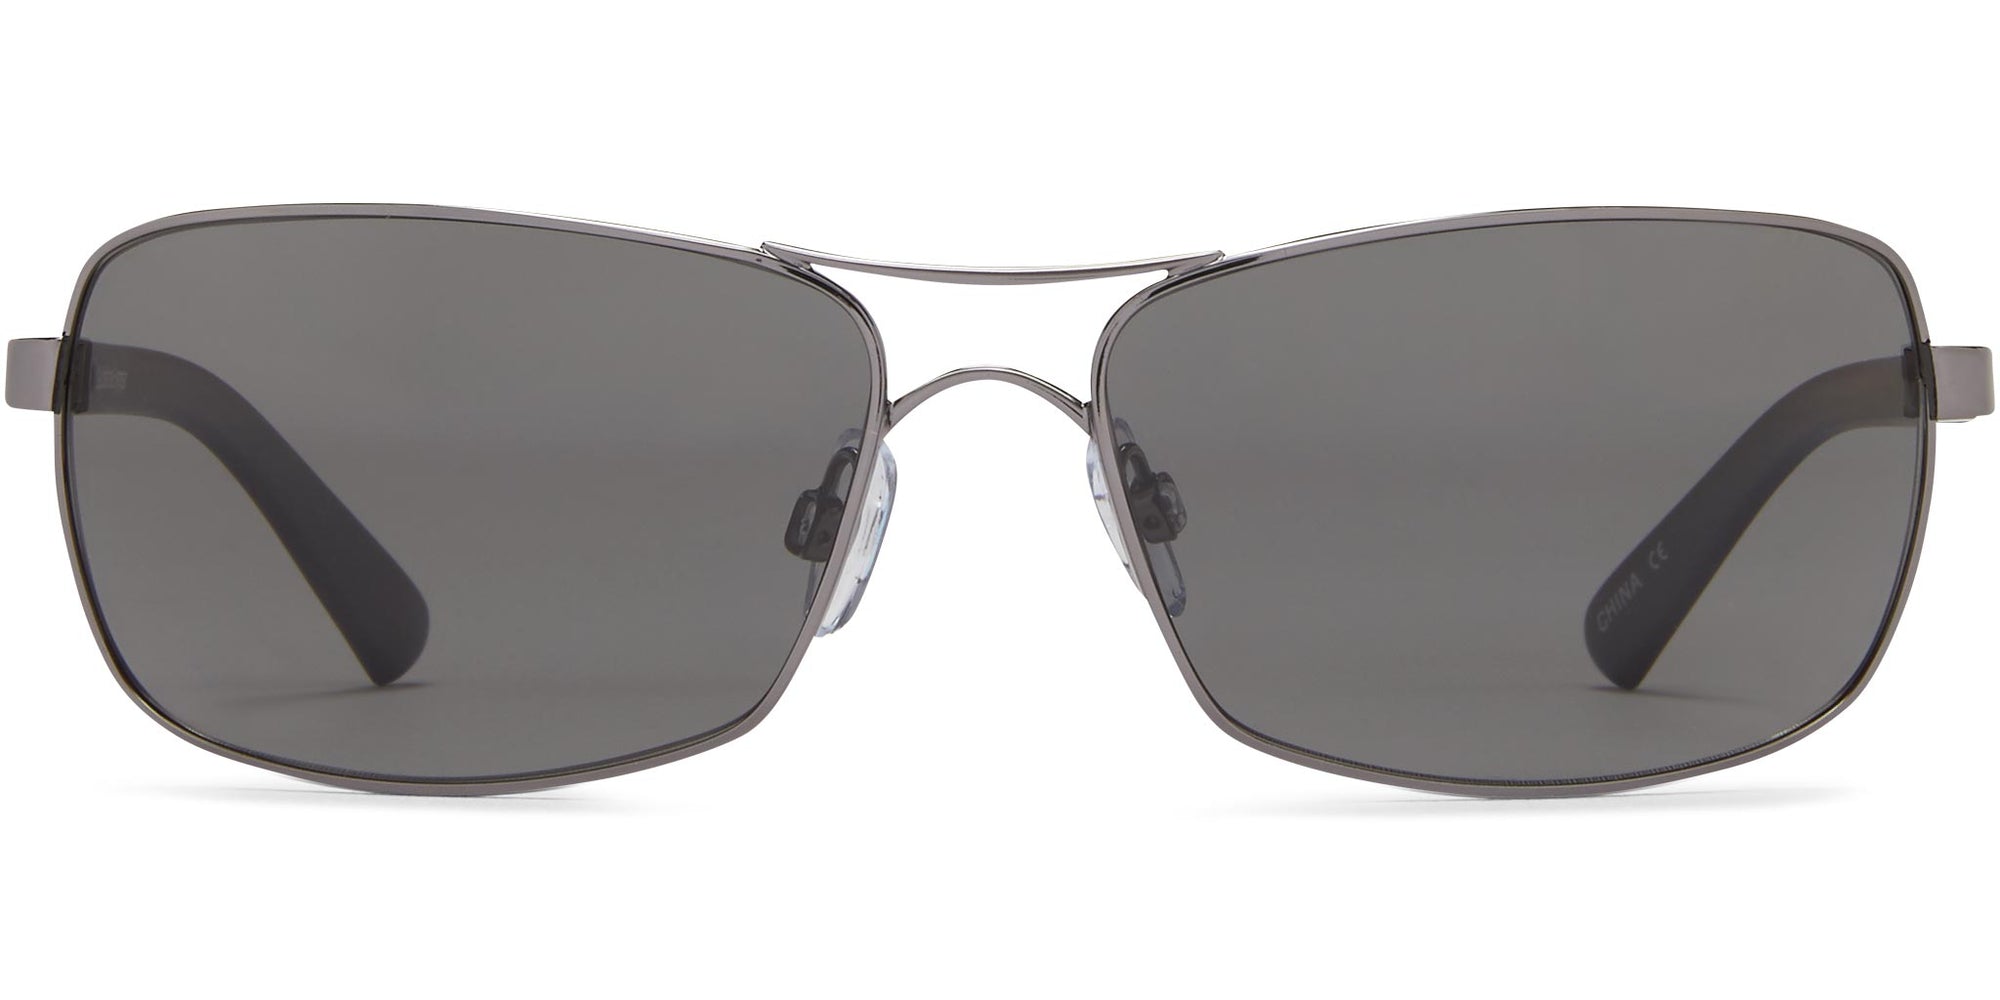 Captain - Shiny Gunmetal/Gray Lens - Polarized Sunglasses